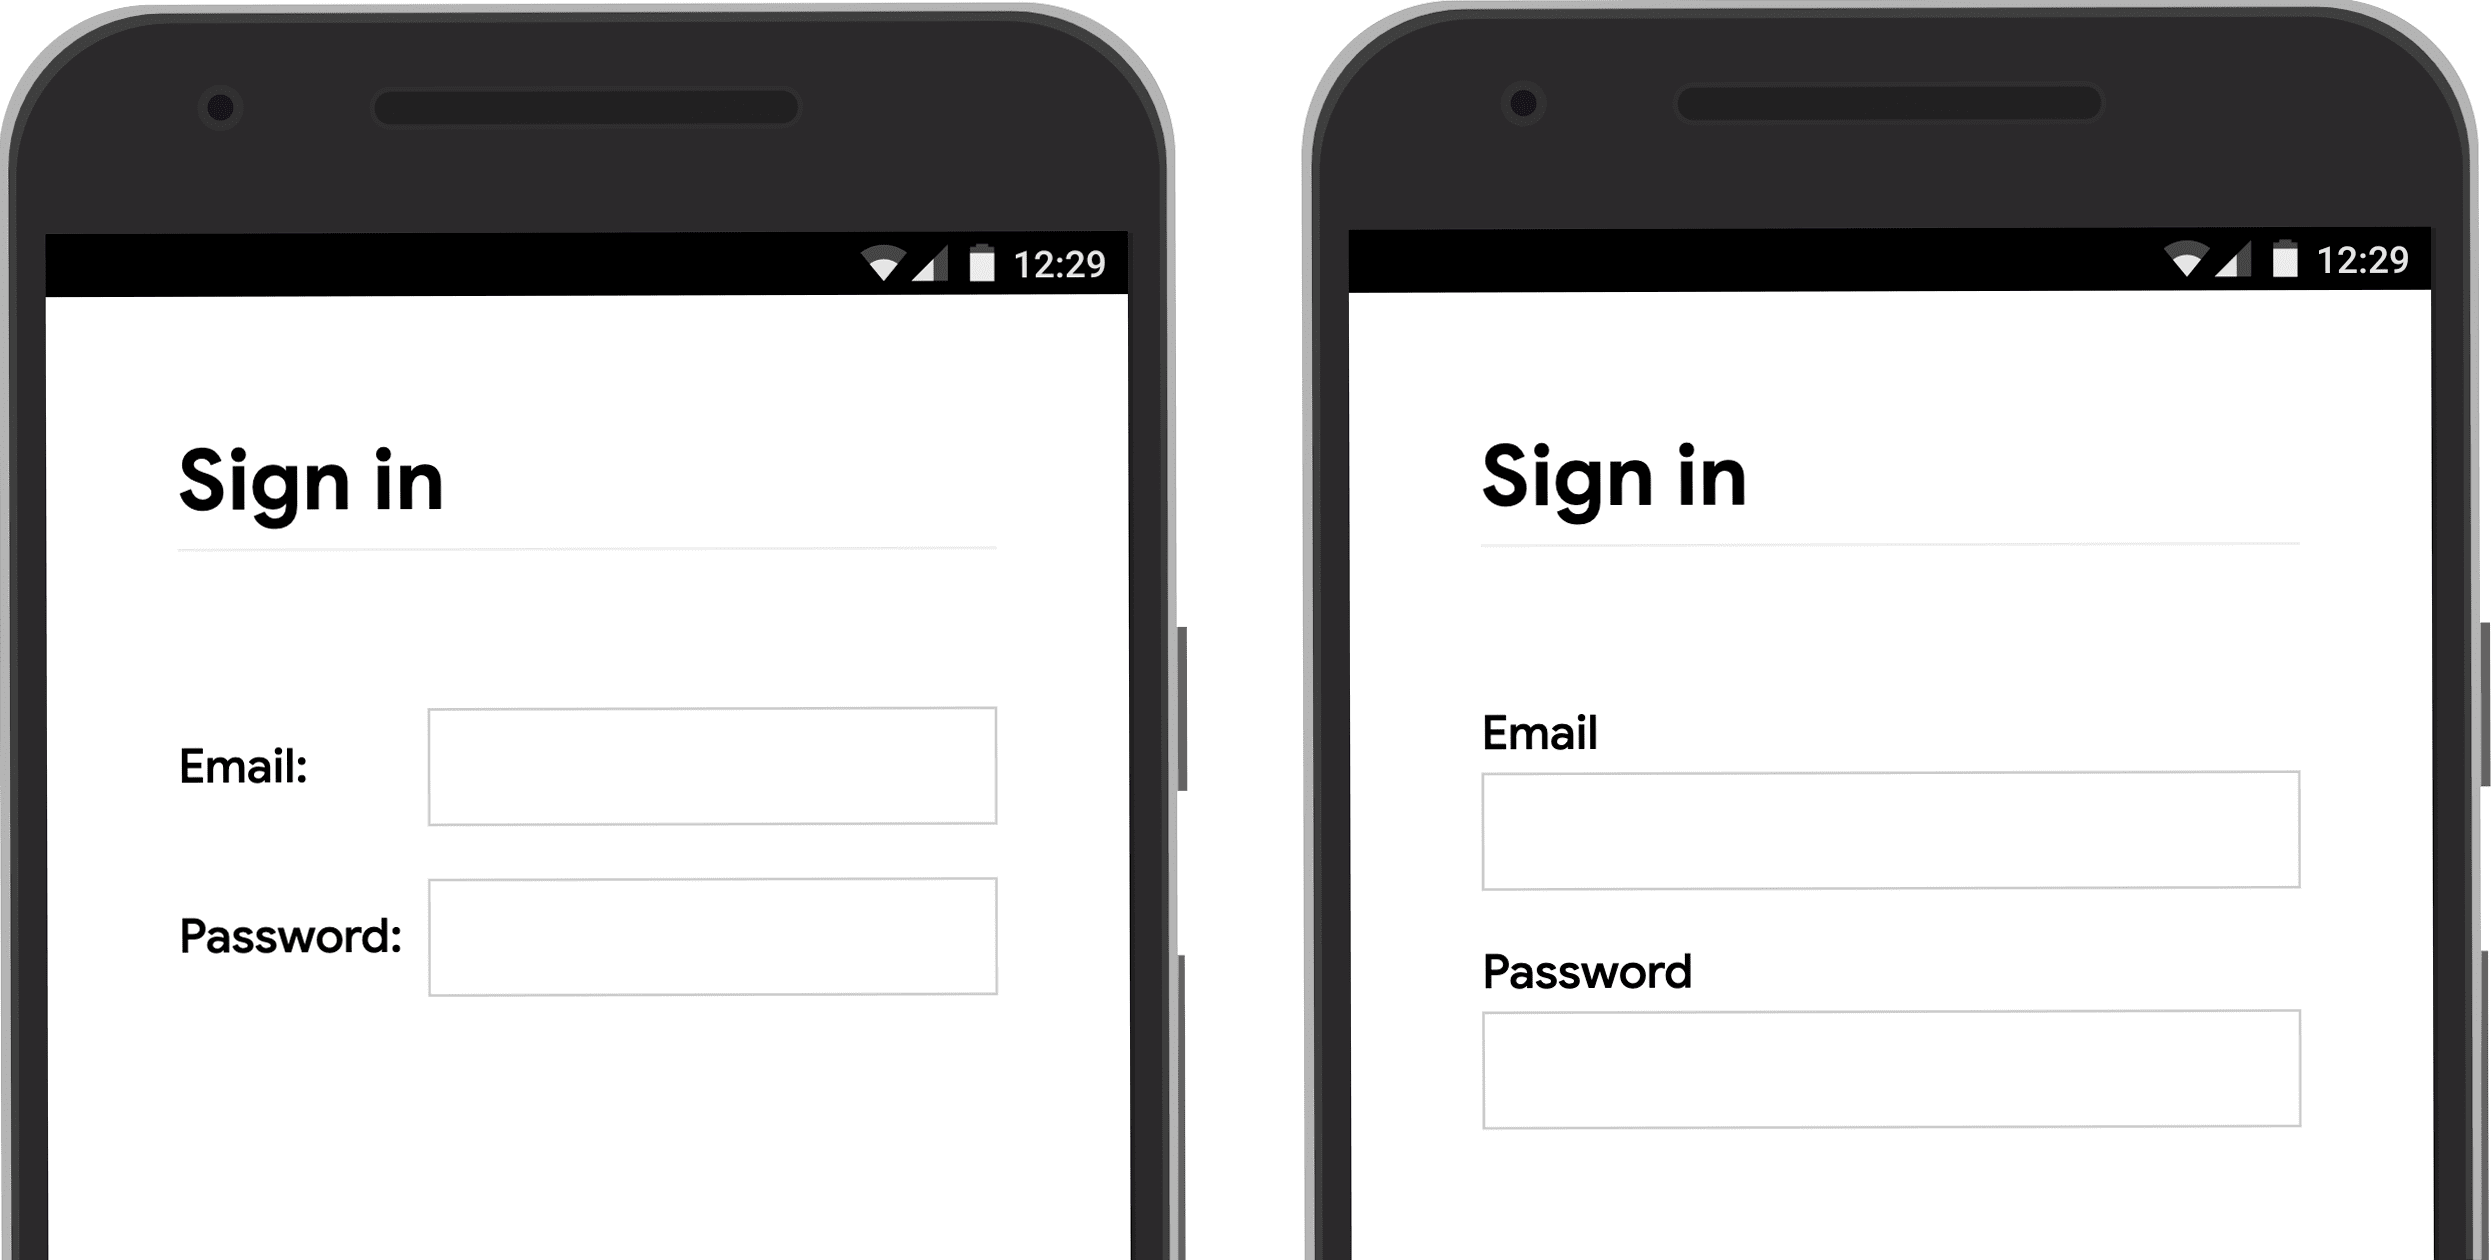 Captura de pantalla que muestra la posición de la etiqueta de entrada del formulario en un dispositivo móvil: junto a la entrada y arriba de ella.